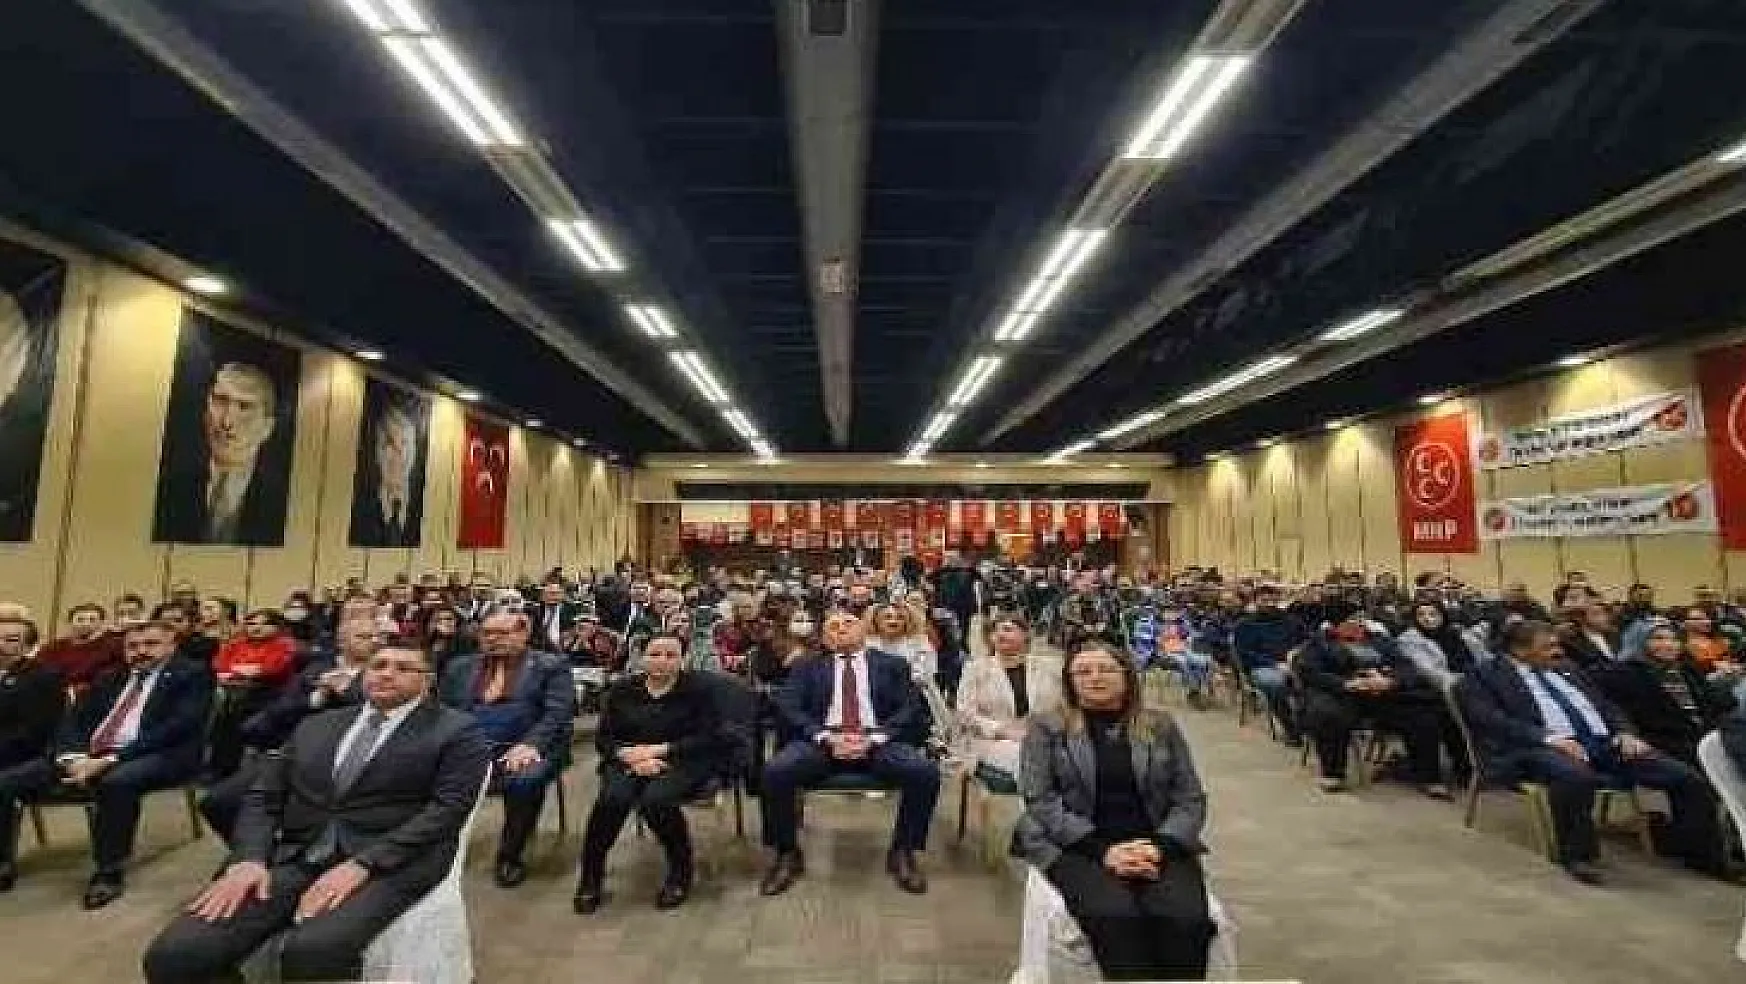 MHP Adım adım 2023 toplantısı Marmaris'te yapıldı